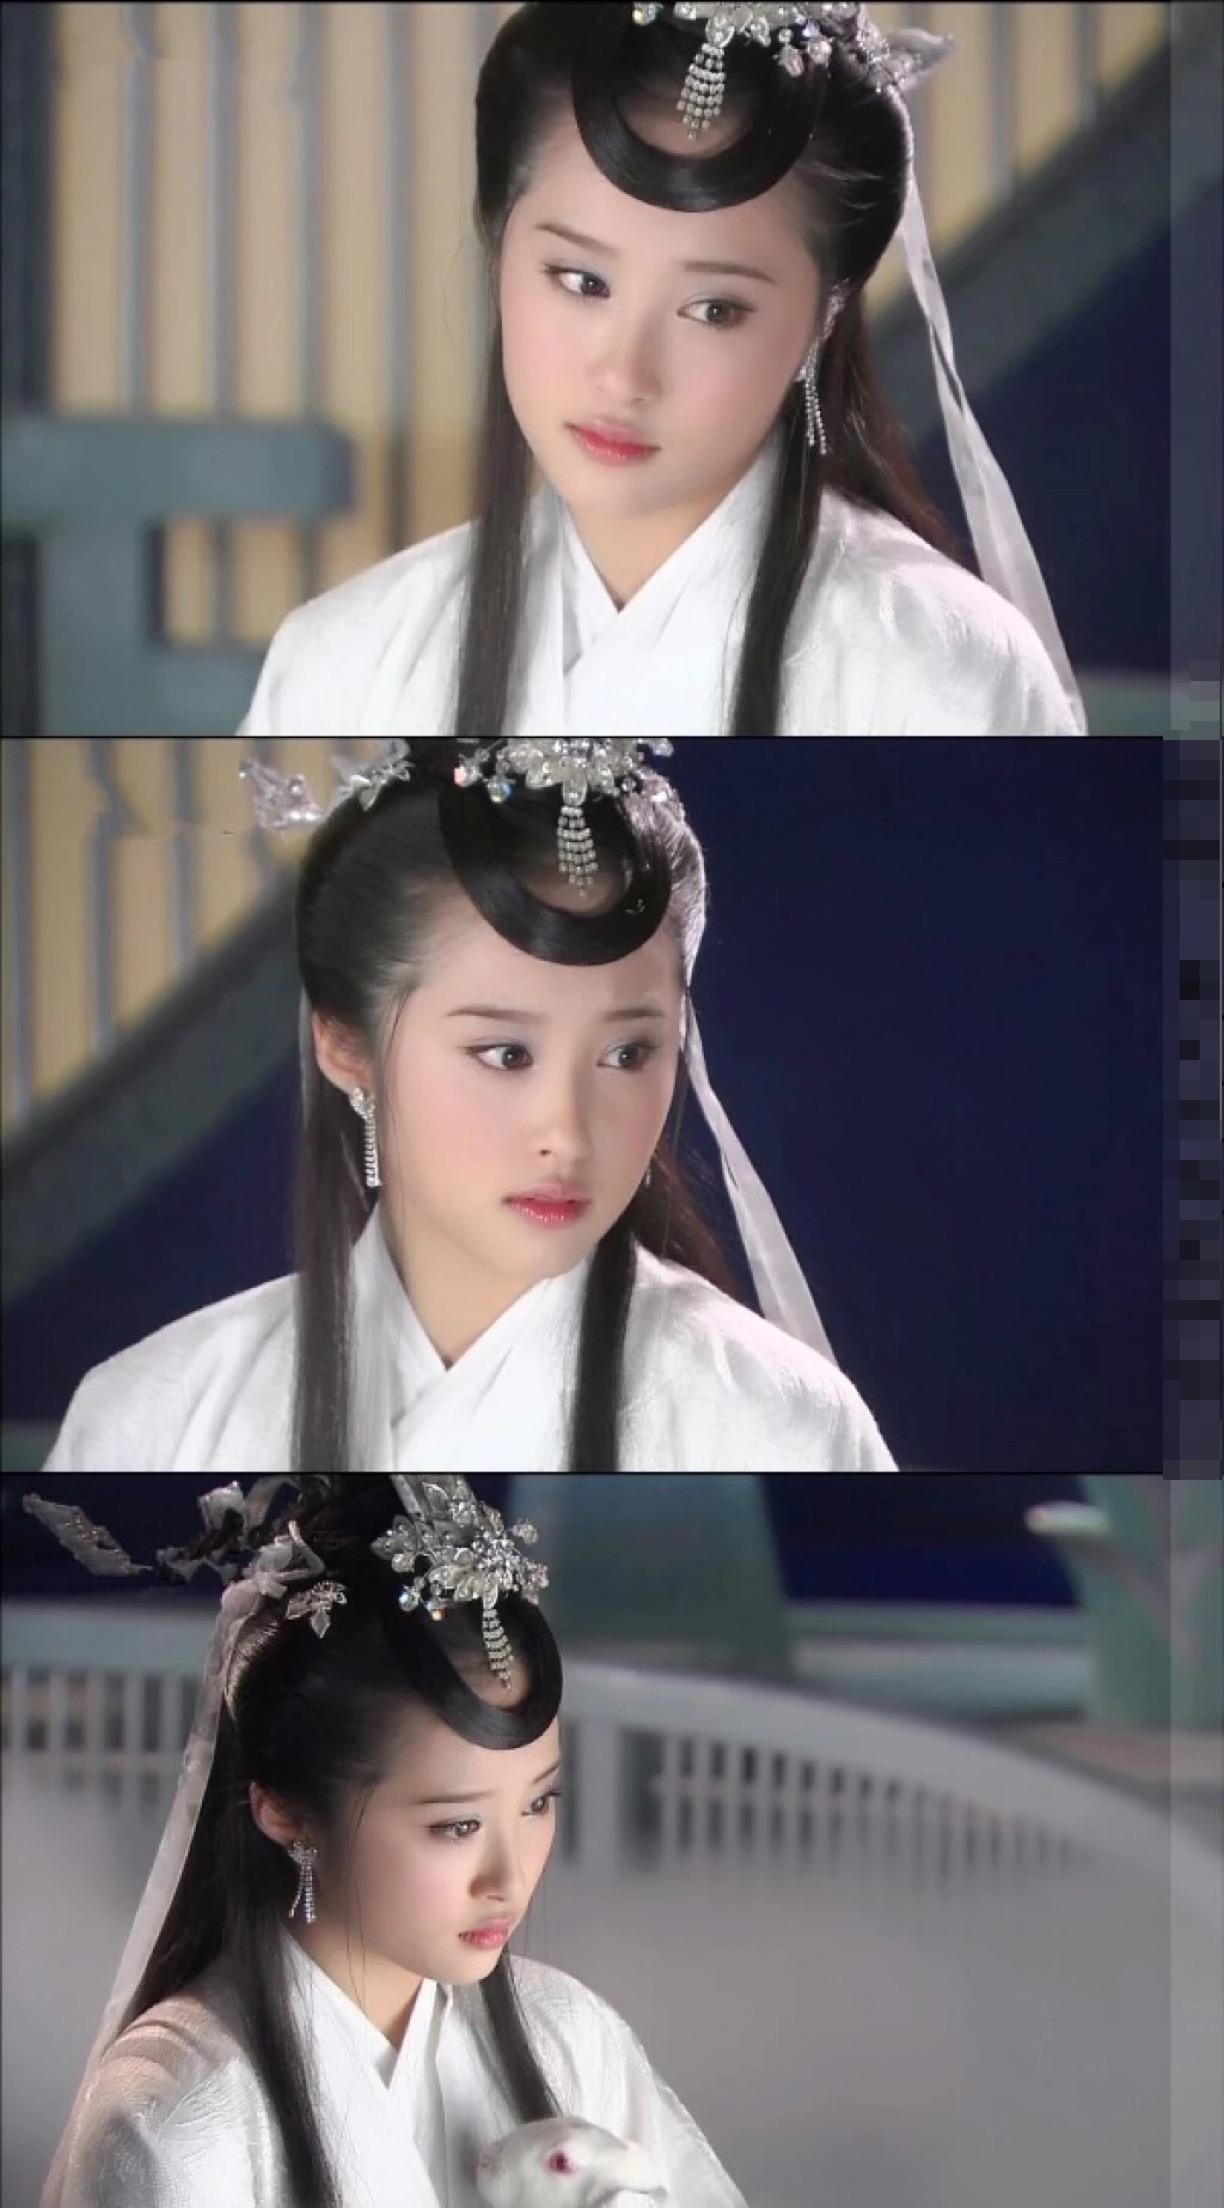 李欣汝才是童年女神啊,她出演的嫦娥也是很美的一版